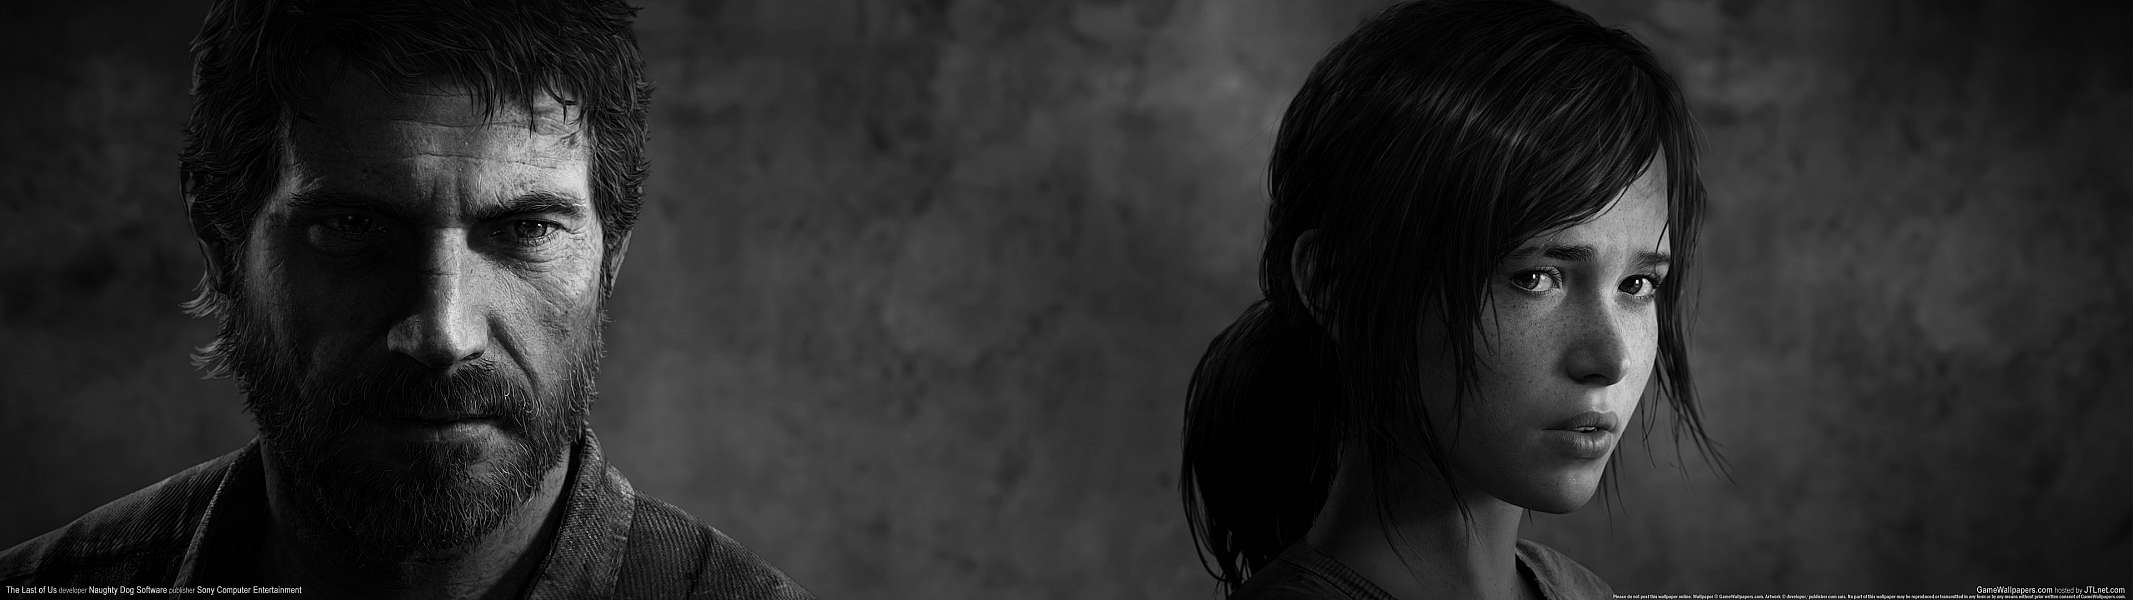 The Last of Us dual screen fond d'écran